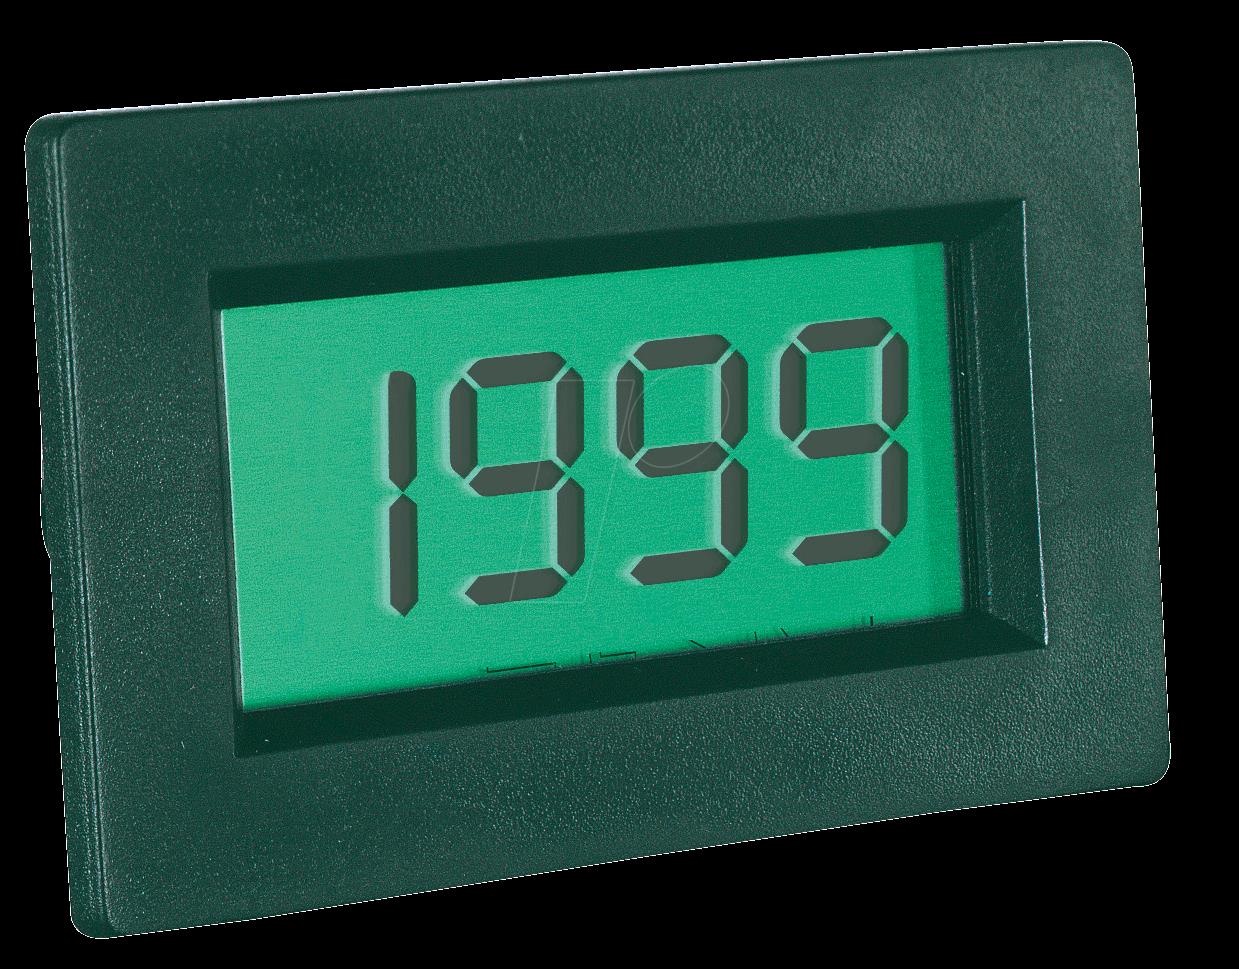 PEAKTECH LDP 135 LCD - LCD-Einbaumodul, 3-1/2 stellig, 13mm, ohne Beleuchtung (LDP-135)